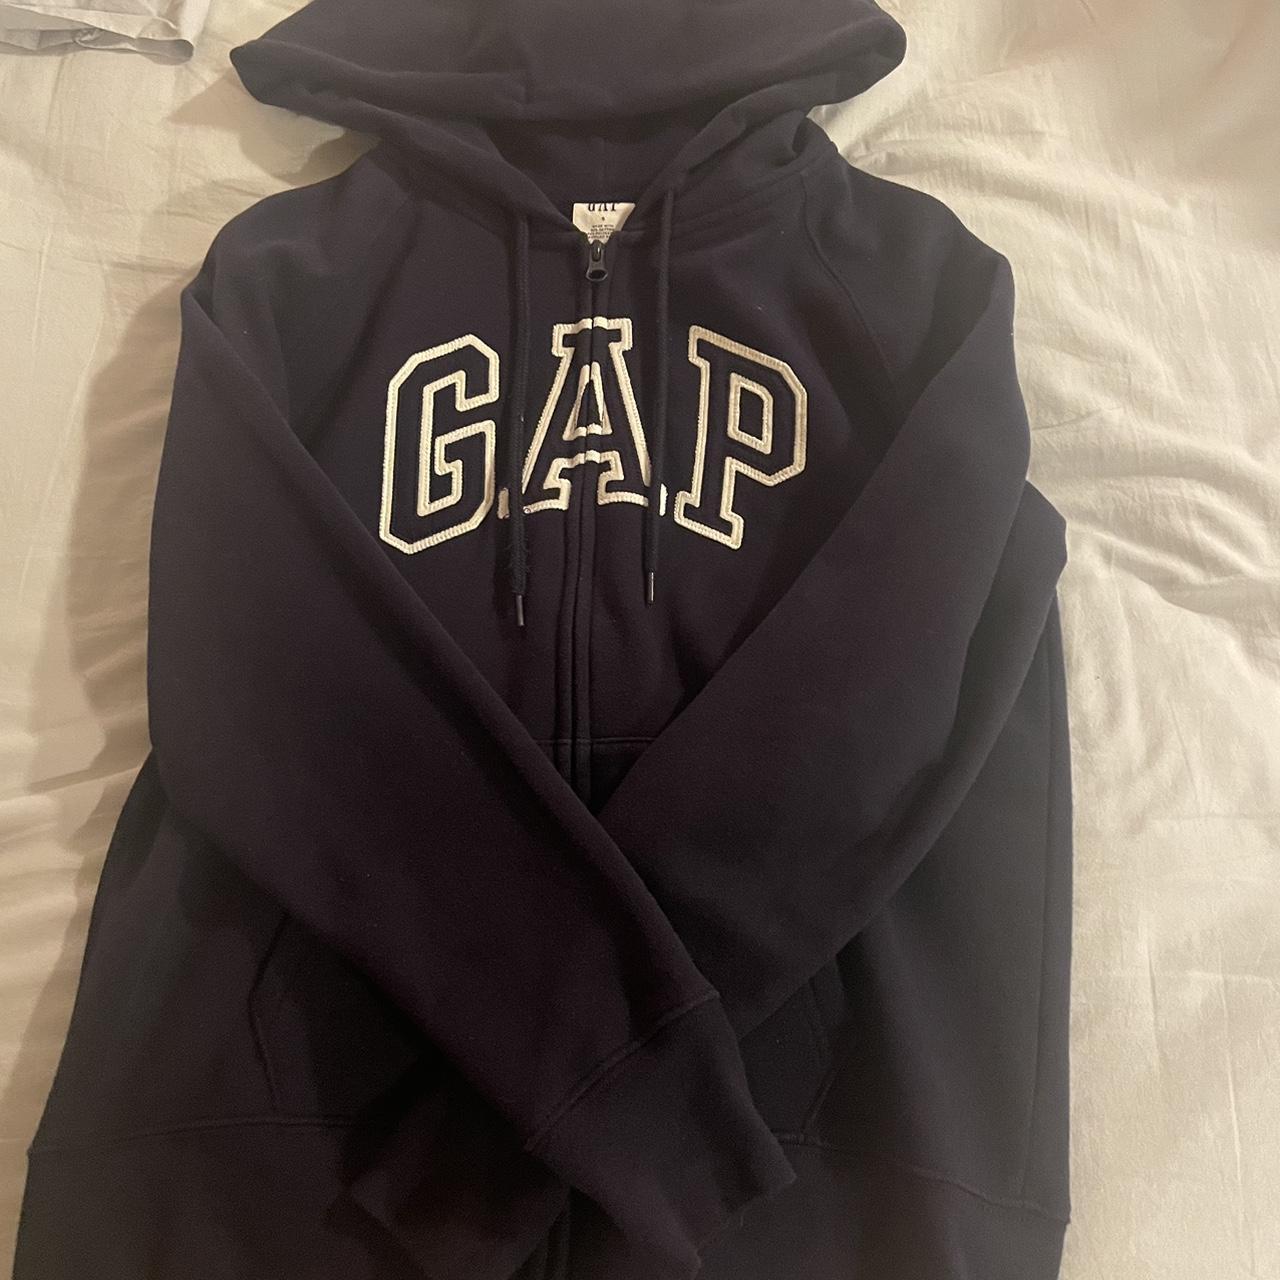 Preloved Navy GAP zip up hoodie Size small #Gap... - Depop